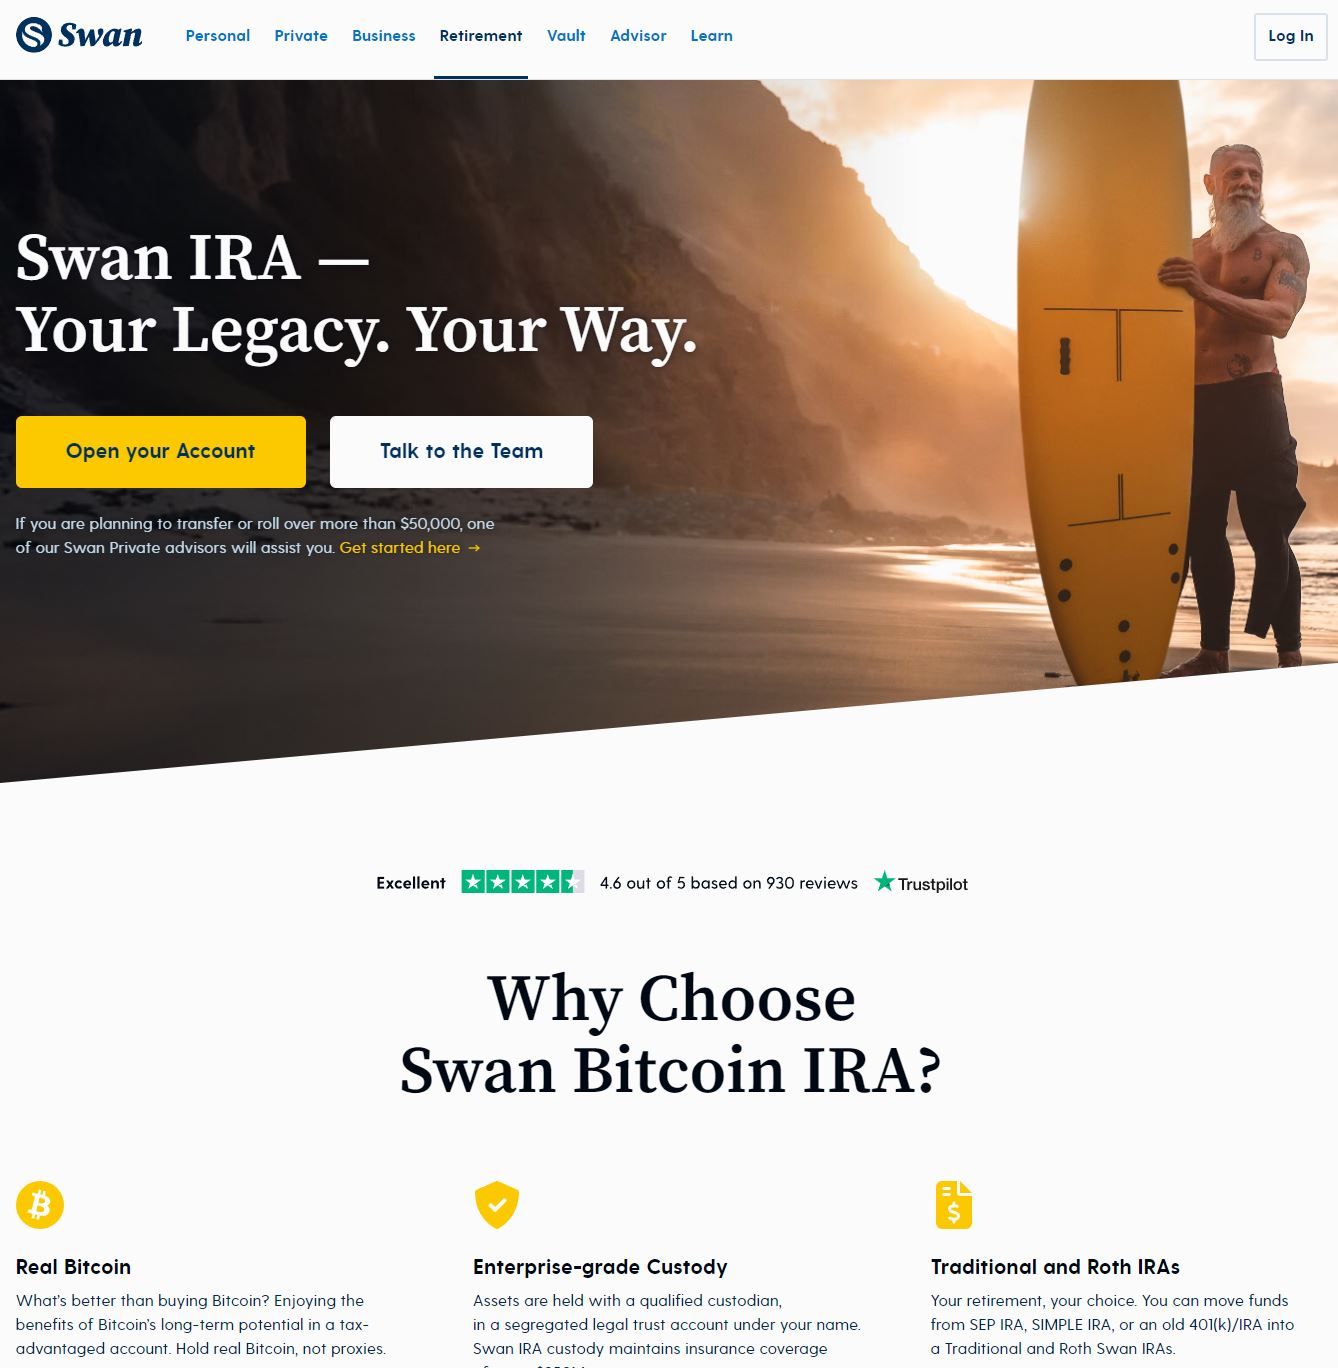 Swan IRA